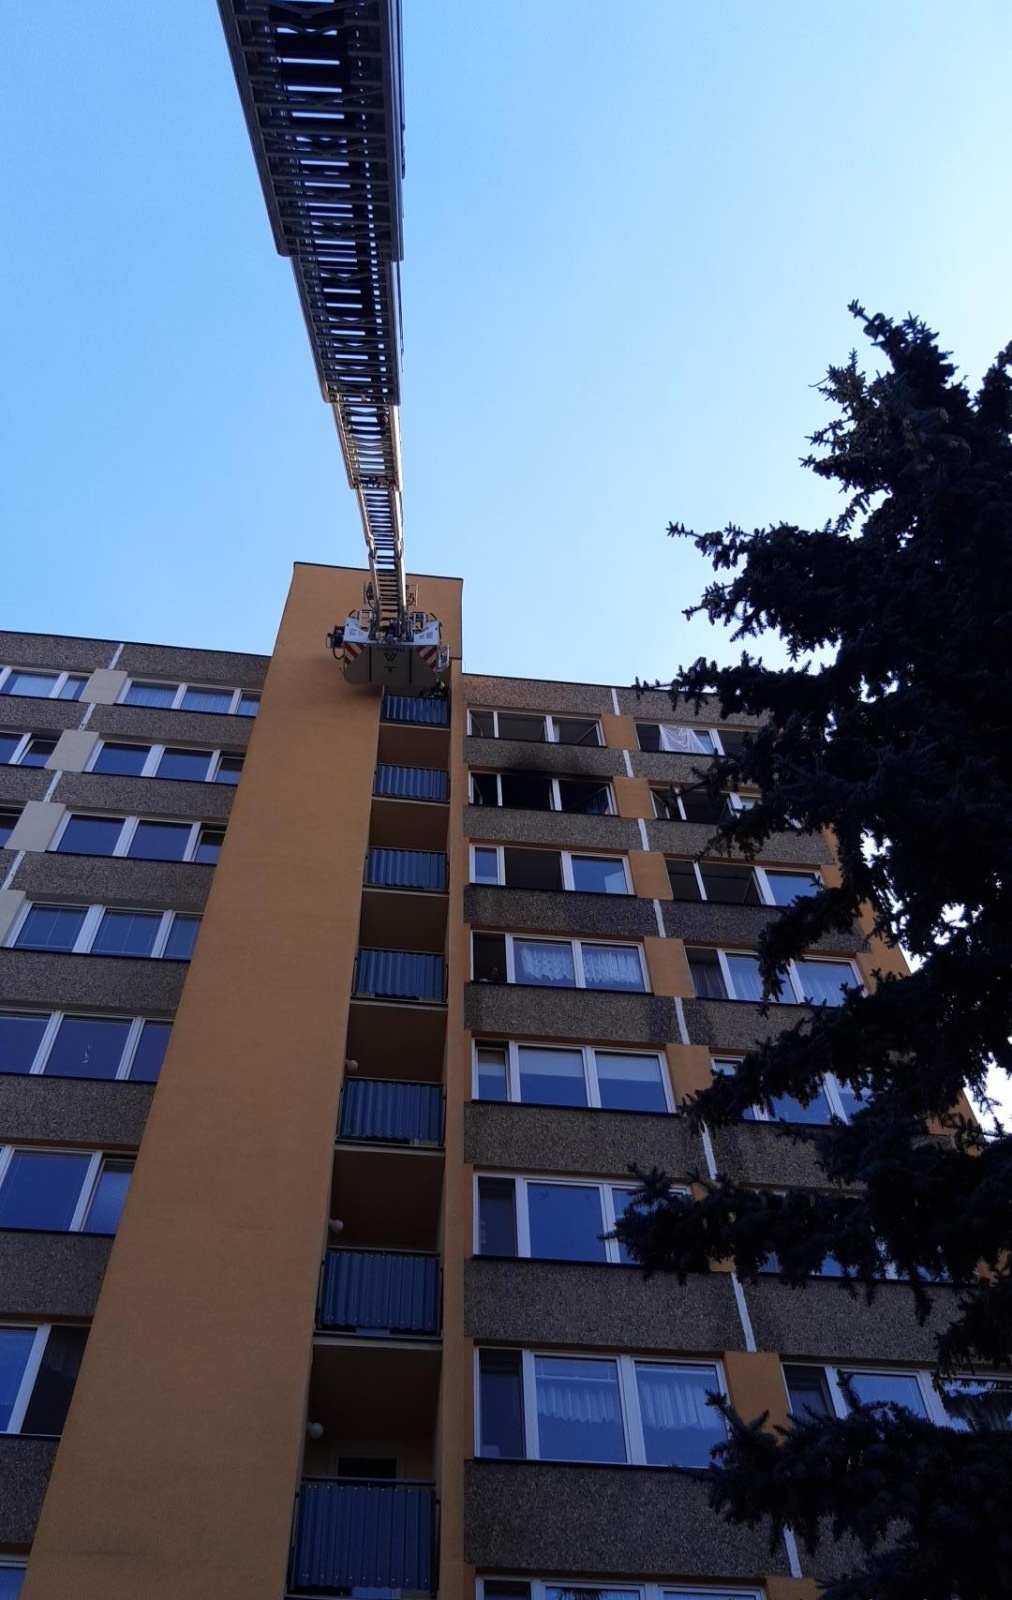 087-Požár kuchyně ve výškové budově v Mladé Boleslavi.jpg